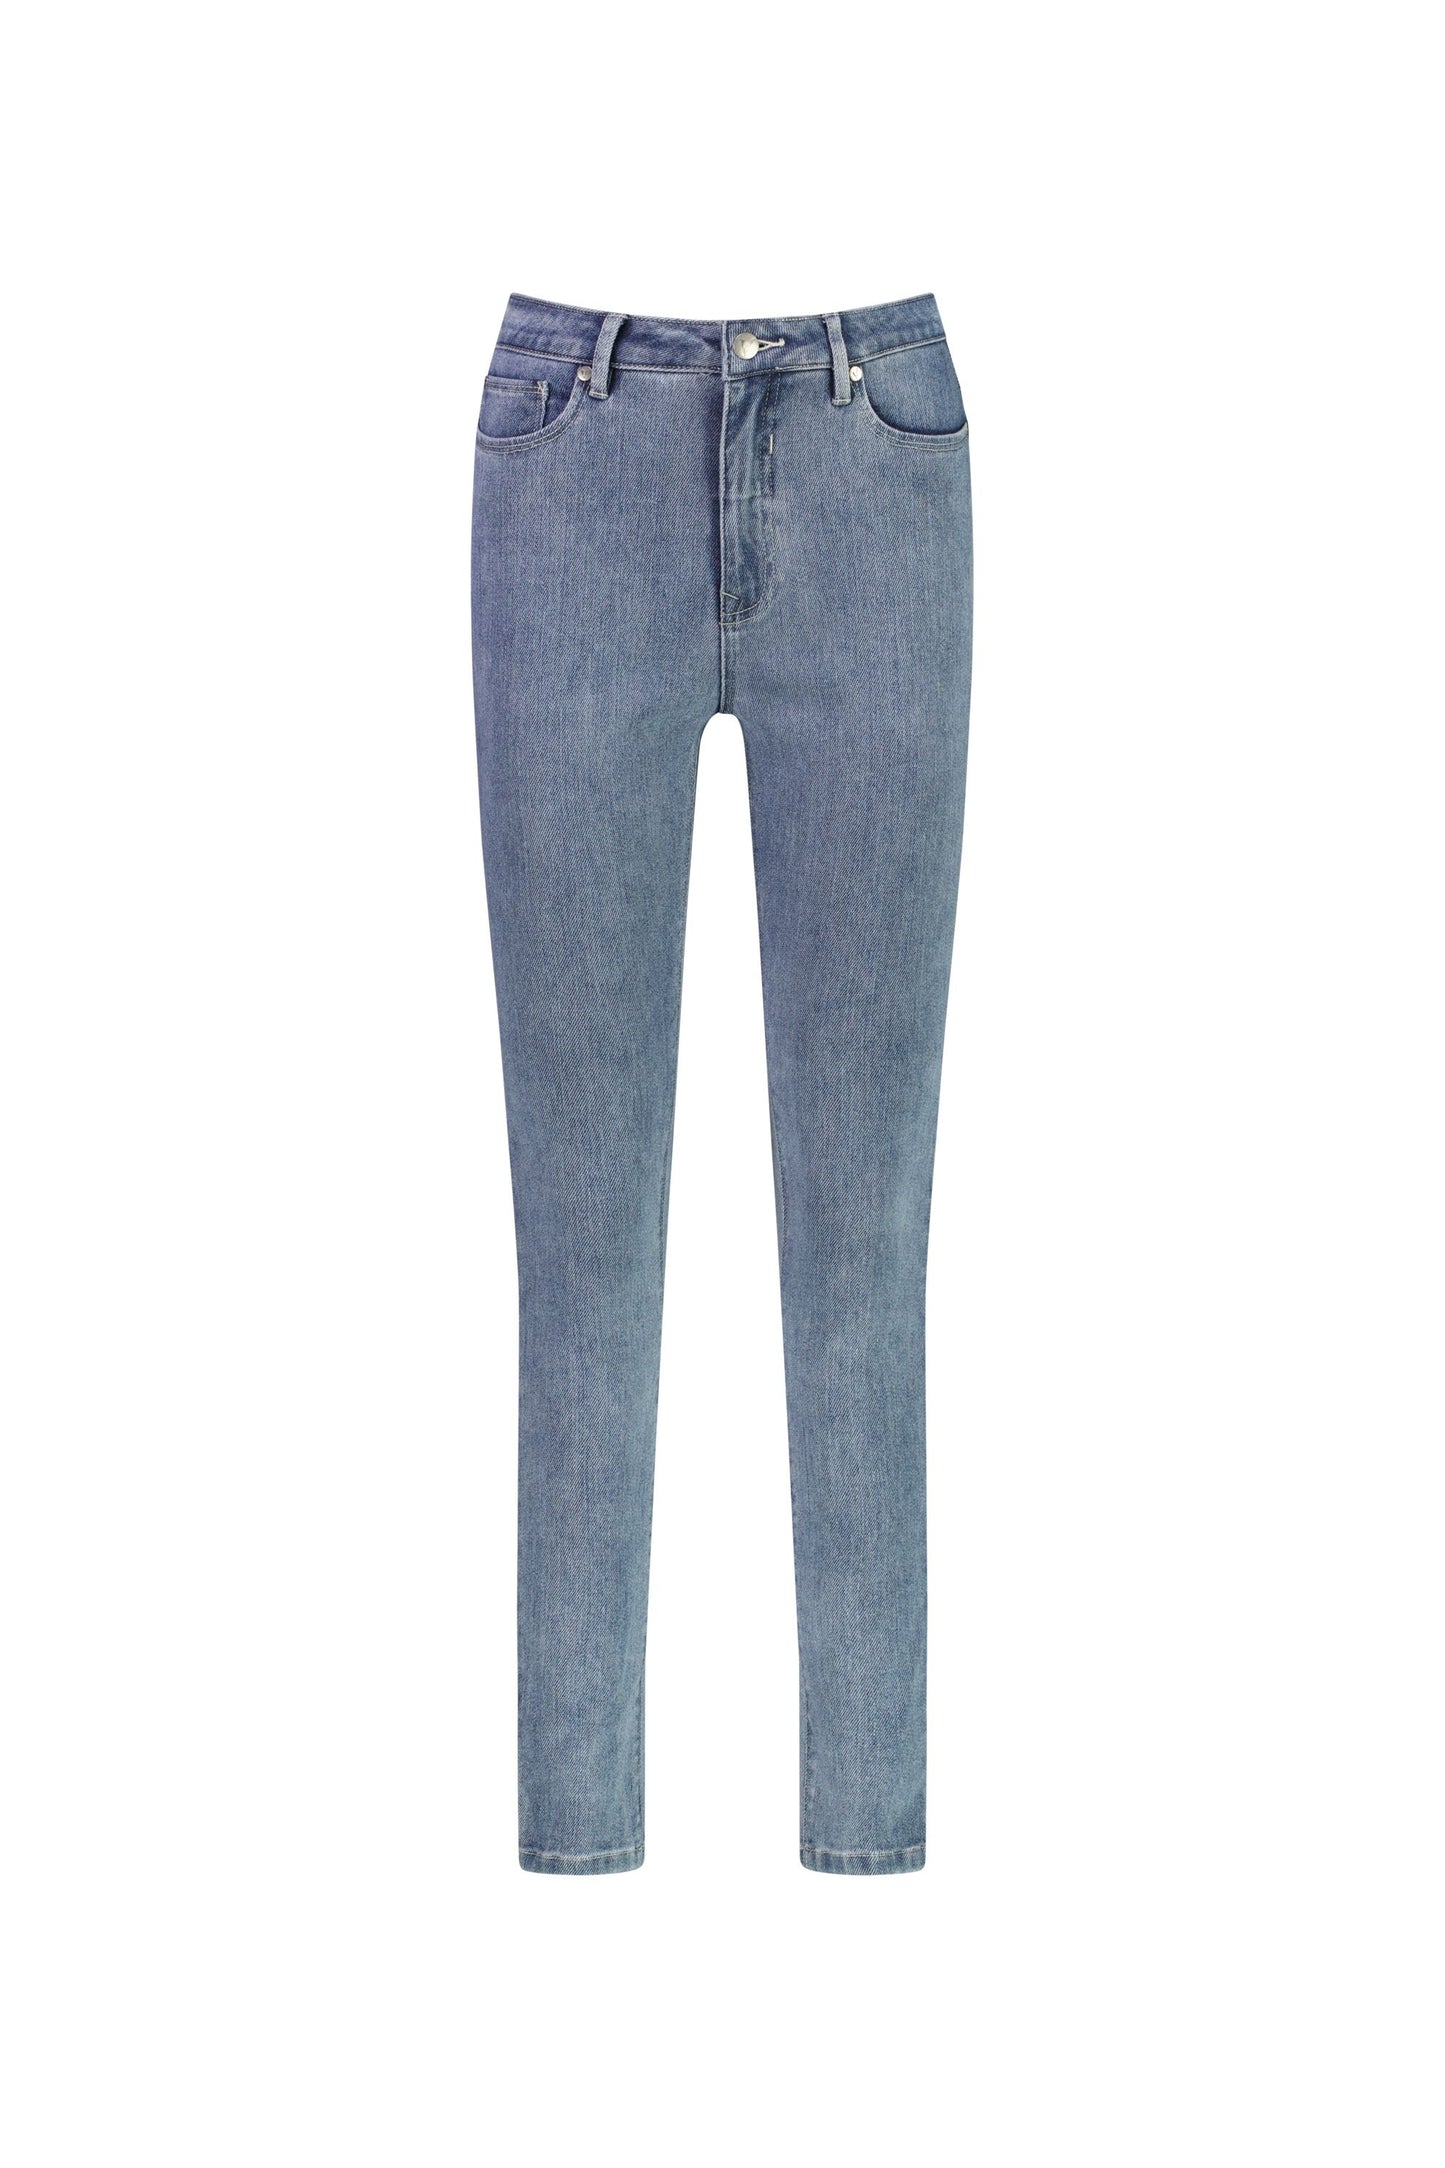 Vassalli Skinny Leg Full Length Jean in Angle Knit Denim Vintage Wash | V5990